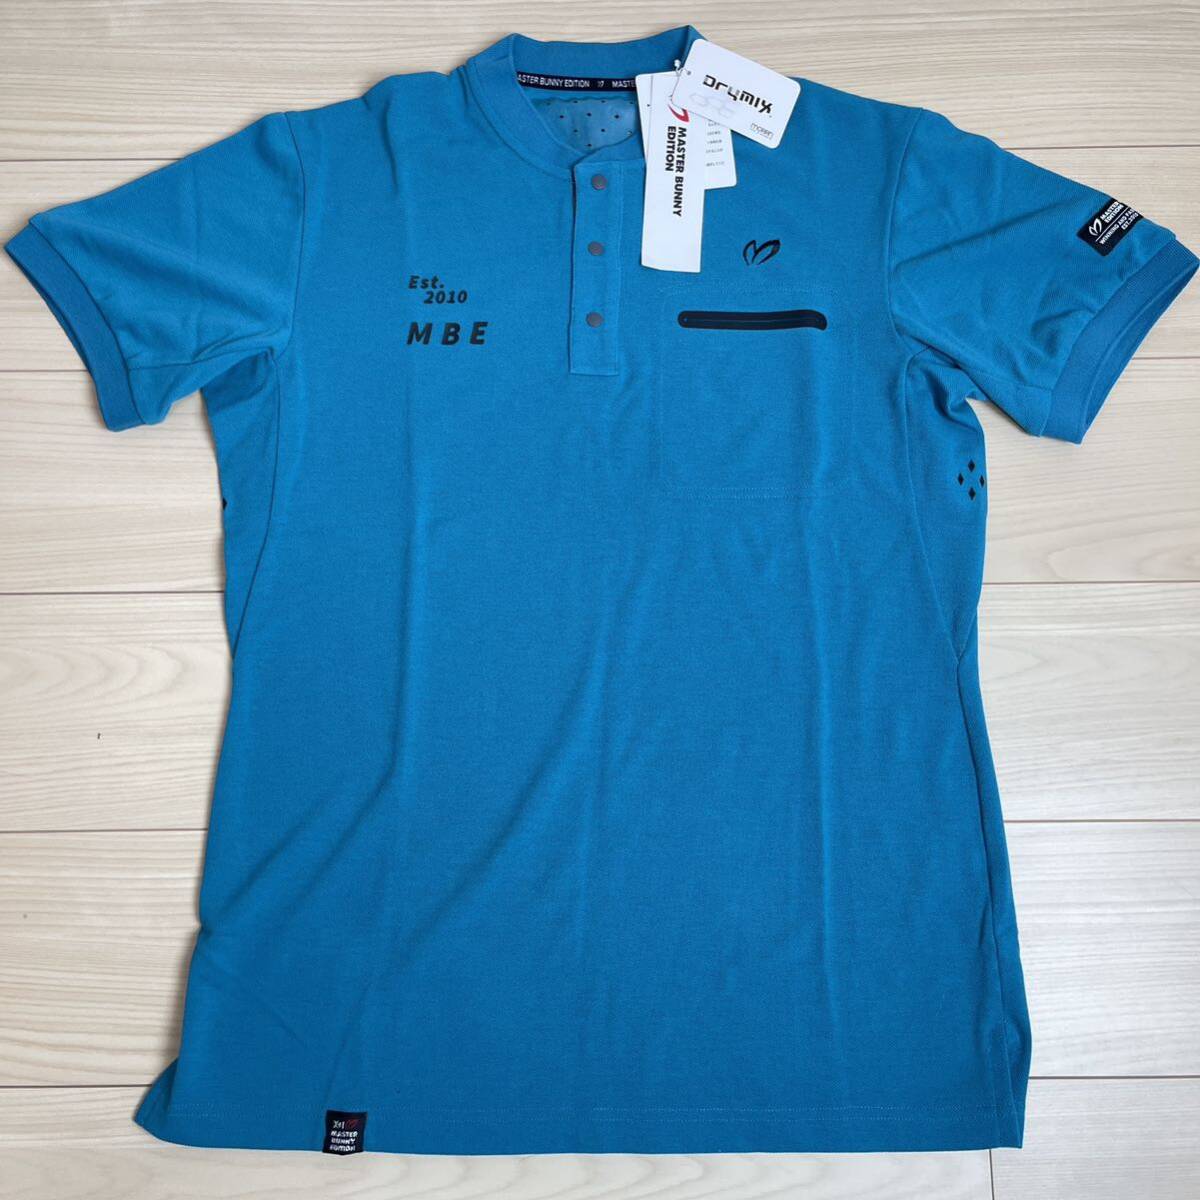 新品正規品 PEARLYGATES マスターバニー 半袖 ポロシャツ 5 (L) シンプル ブルー　ゴルフ Lサイズ 